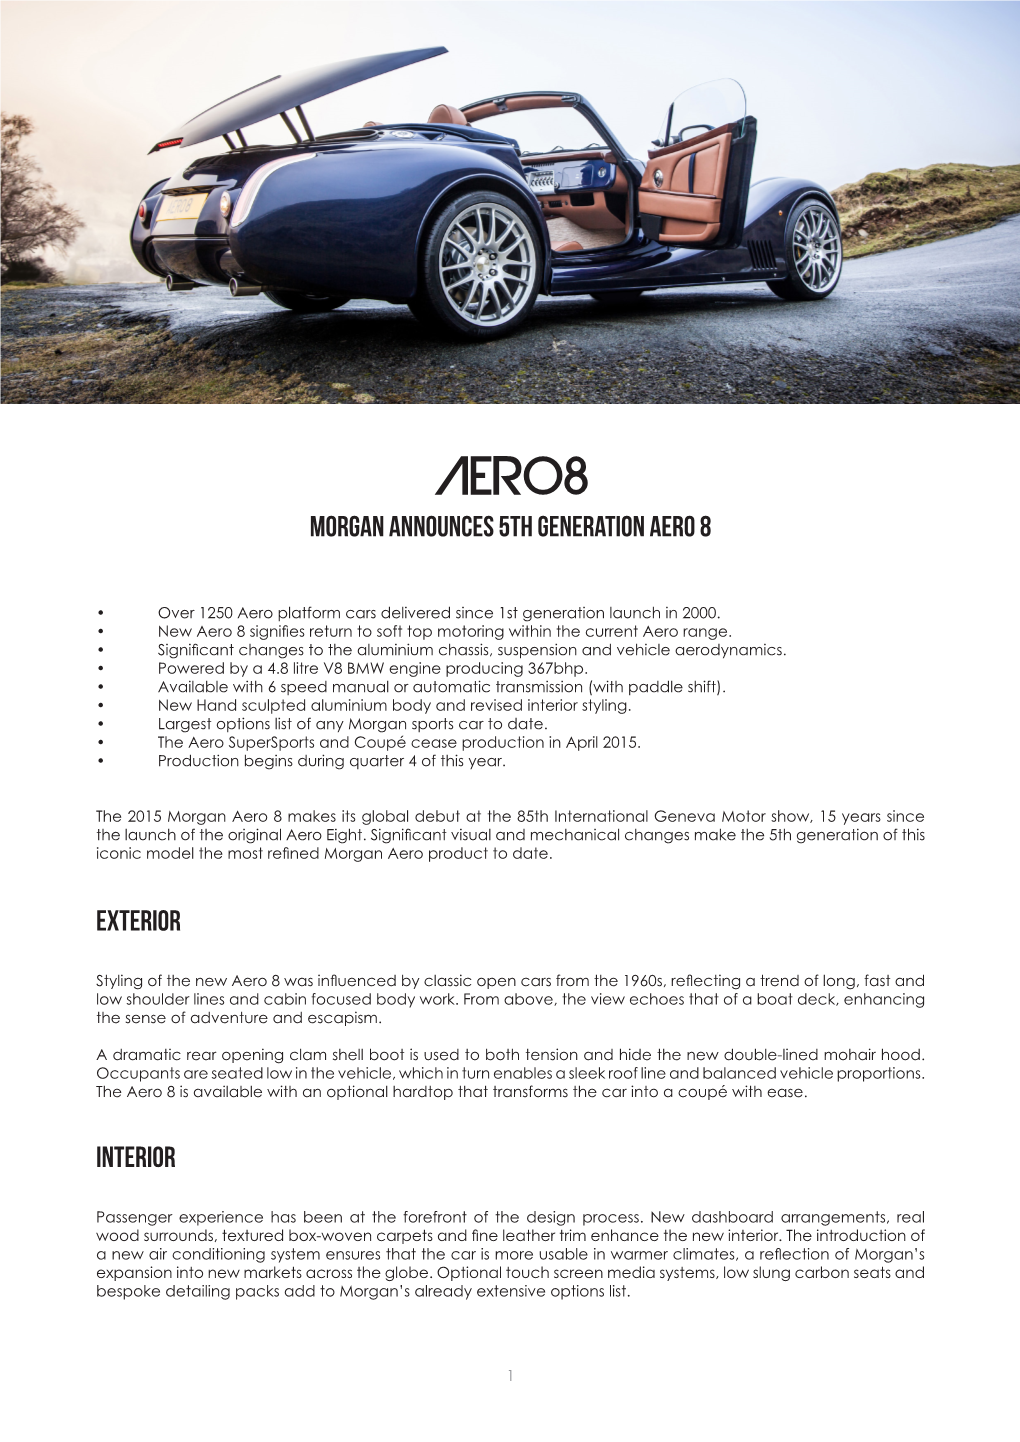 Press Release: Morgan Announces 5Th Generation Aero 8